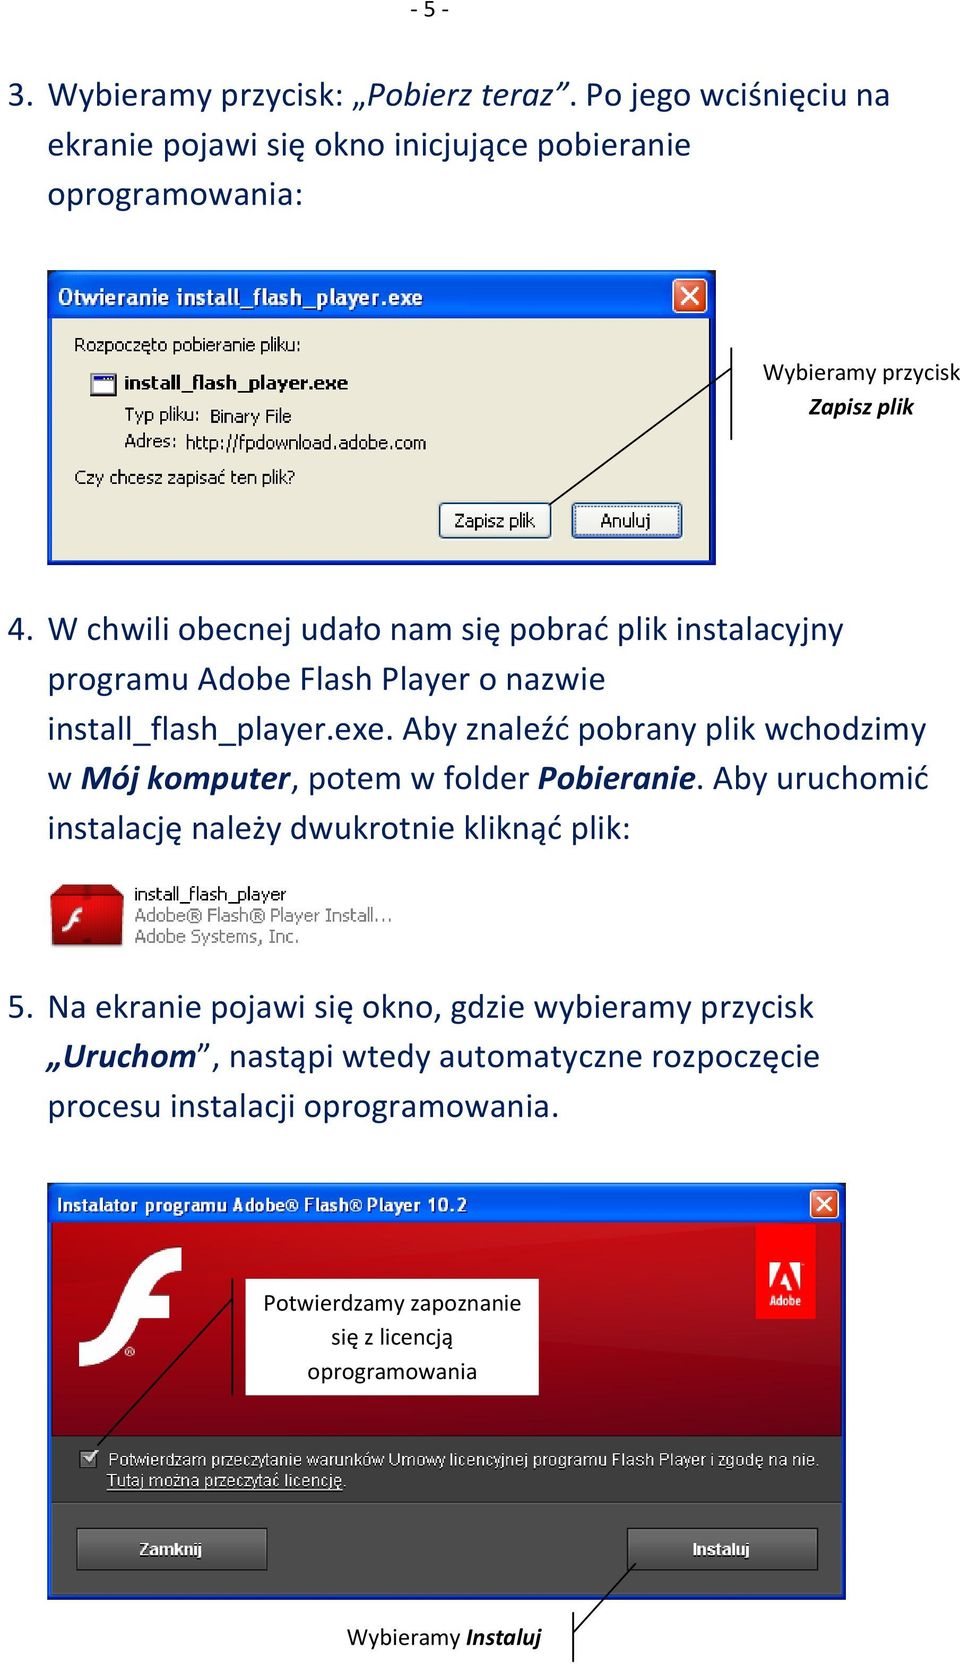 W chwili obecnej udało nam się pobrać plik instalacyjny programu Adobe Flash Player o nazwie install_flash_player.exe.